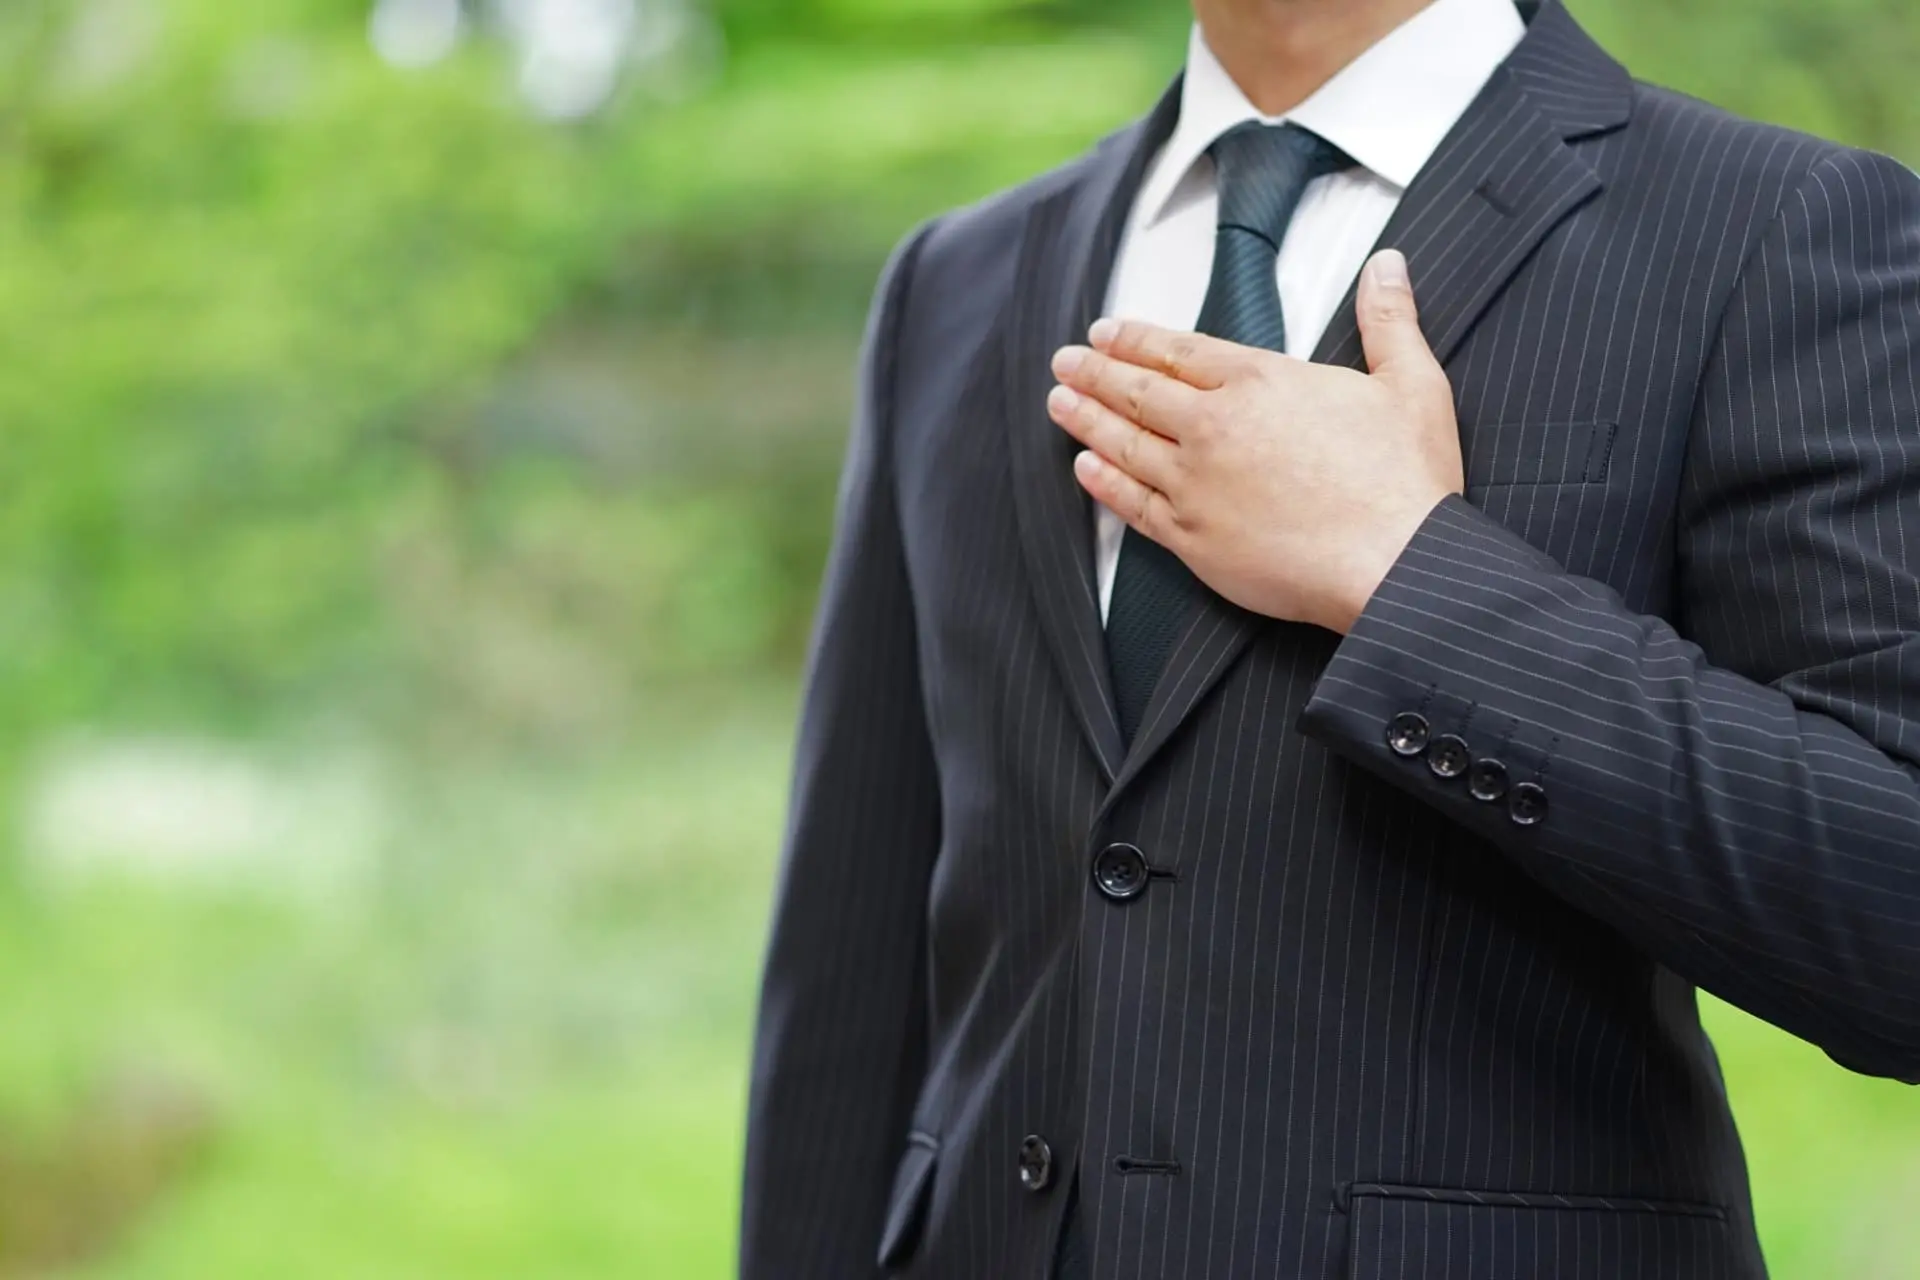 スーツ姿のビジネスマンが、胸に手を当てて屋外に立っている写真